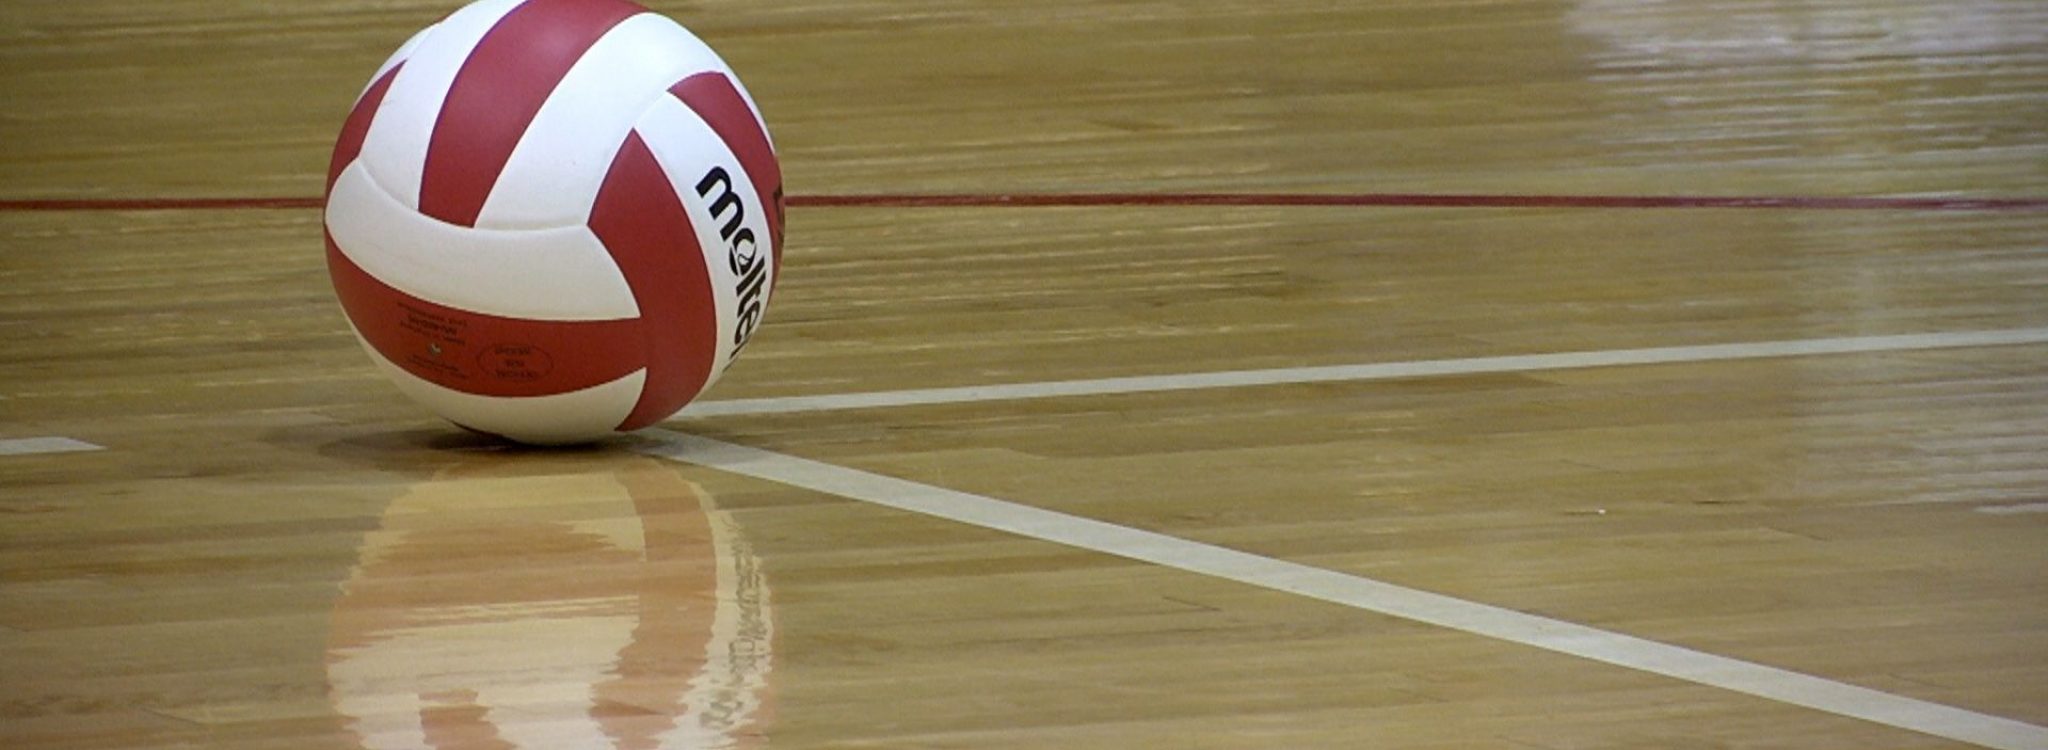 volleyball-court-hd-wallpaper